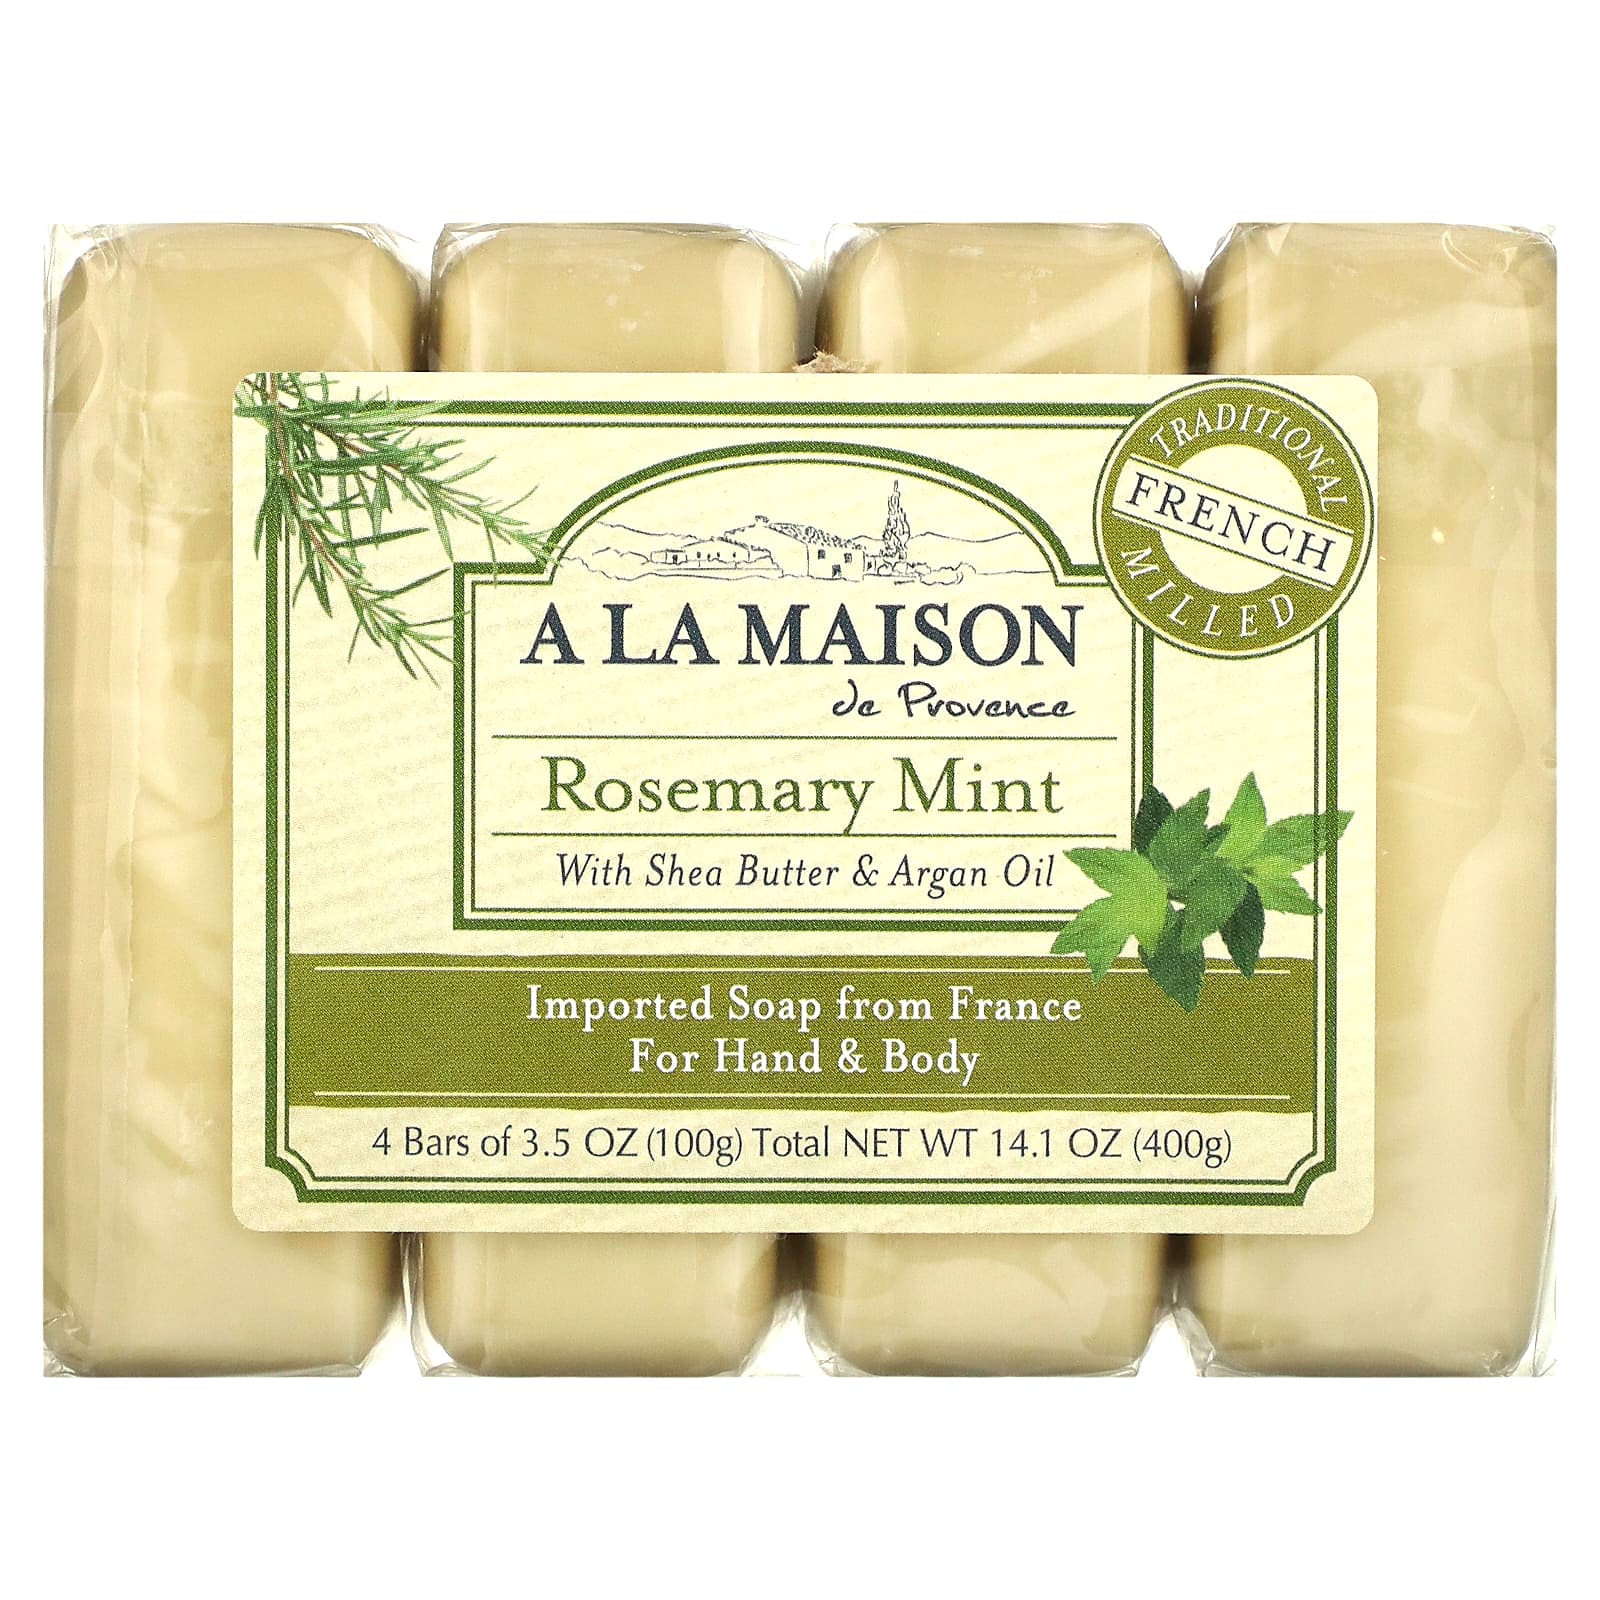 A La Maison de Provence Мыло для рук и тела с ароматом розмарина и мяты 4 куска 3.5 унций (100 г) каждый цена и фото